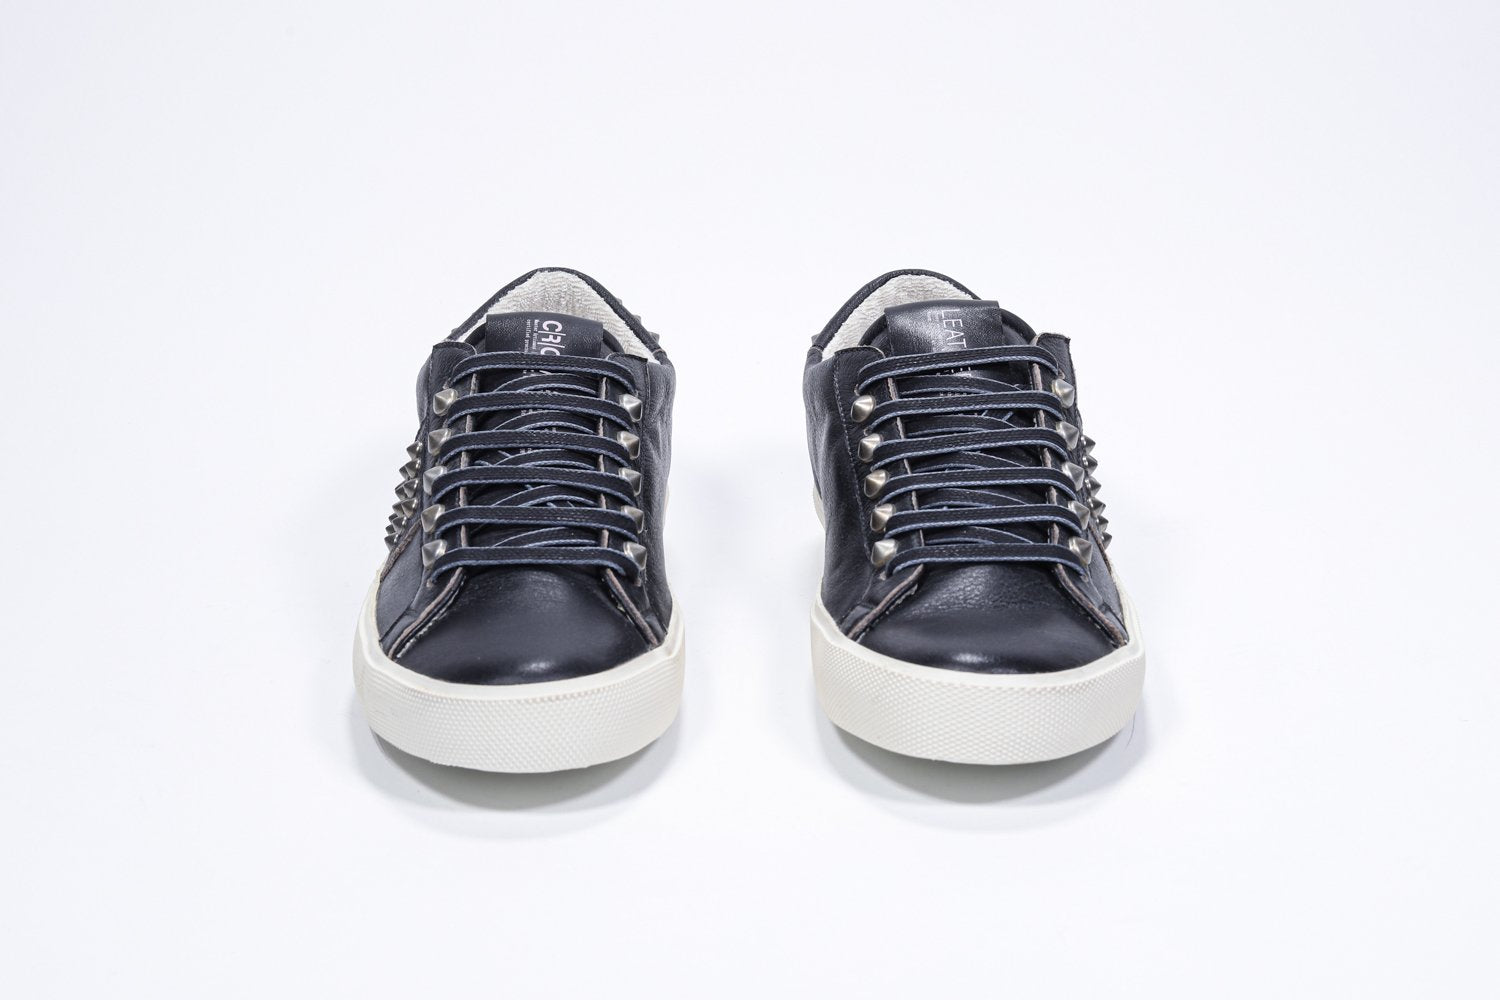 Vue de face de la chaussure noire sneaker. Tige en cuir avec clous et semelle en caoutchouc vintage.